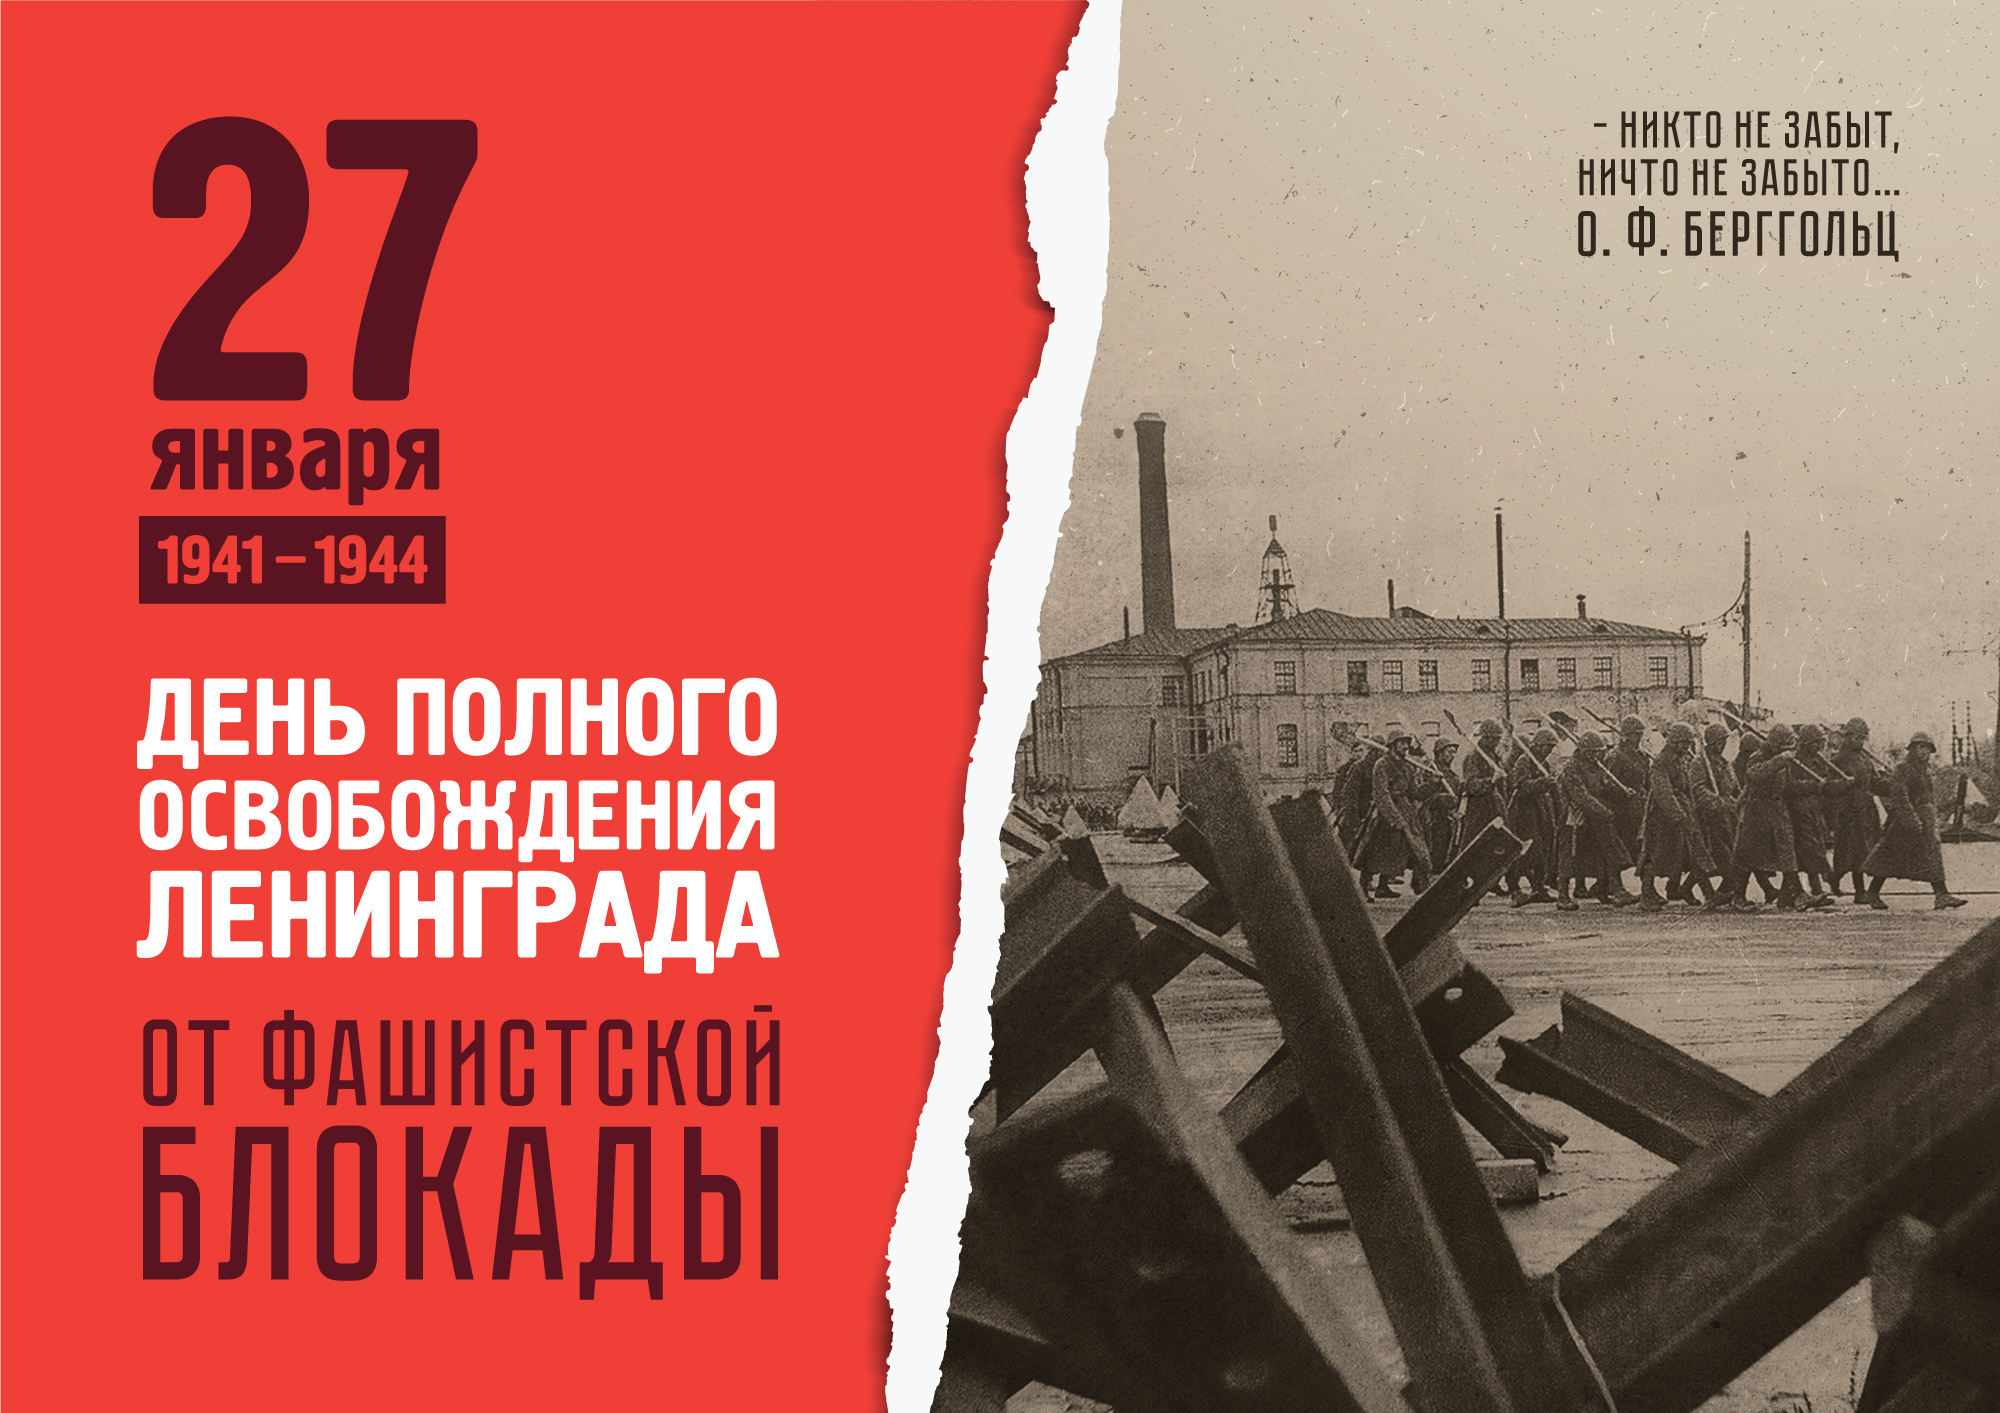 80-ти летие полного освобождения Ленинграда от фашистской блокады.